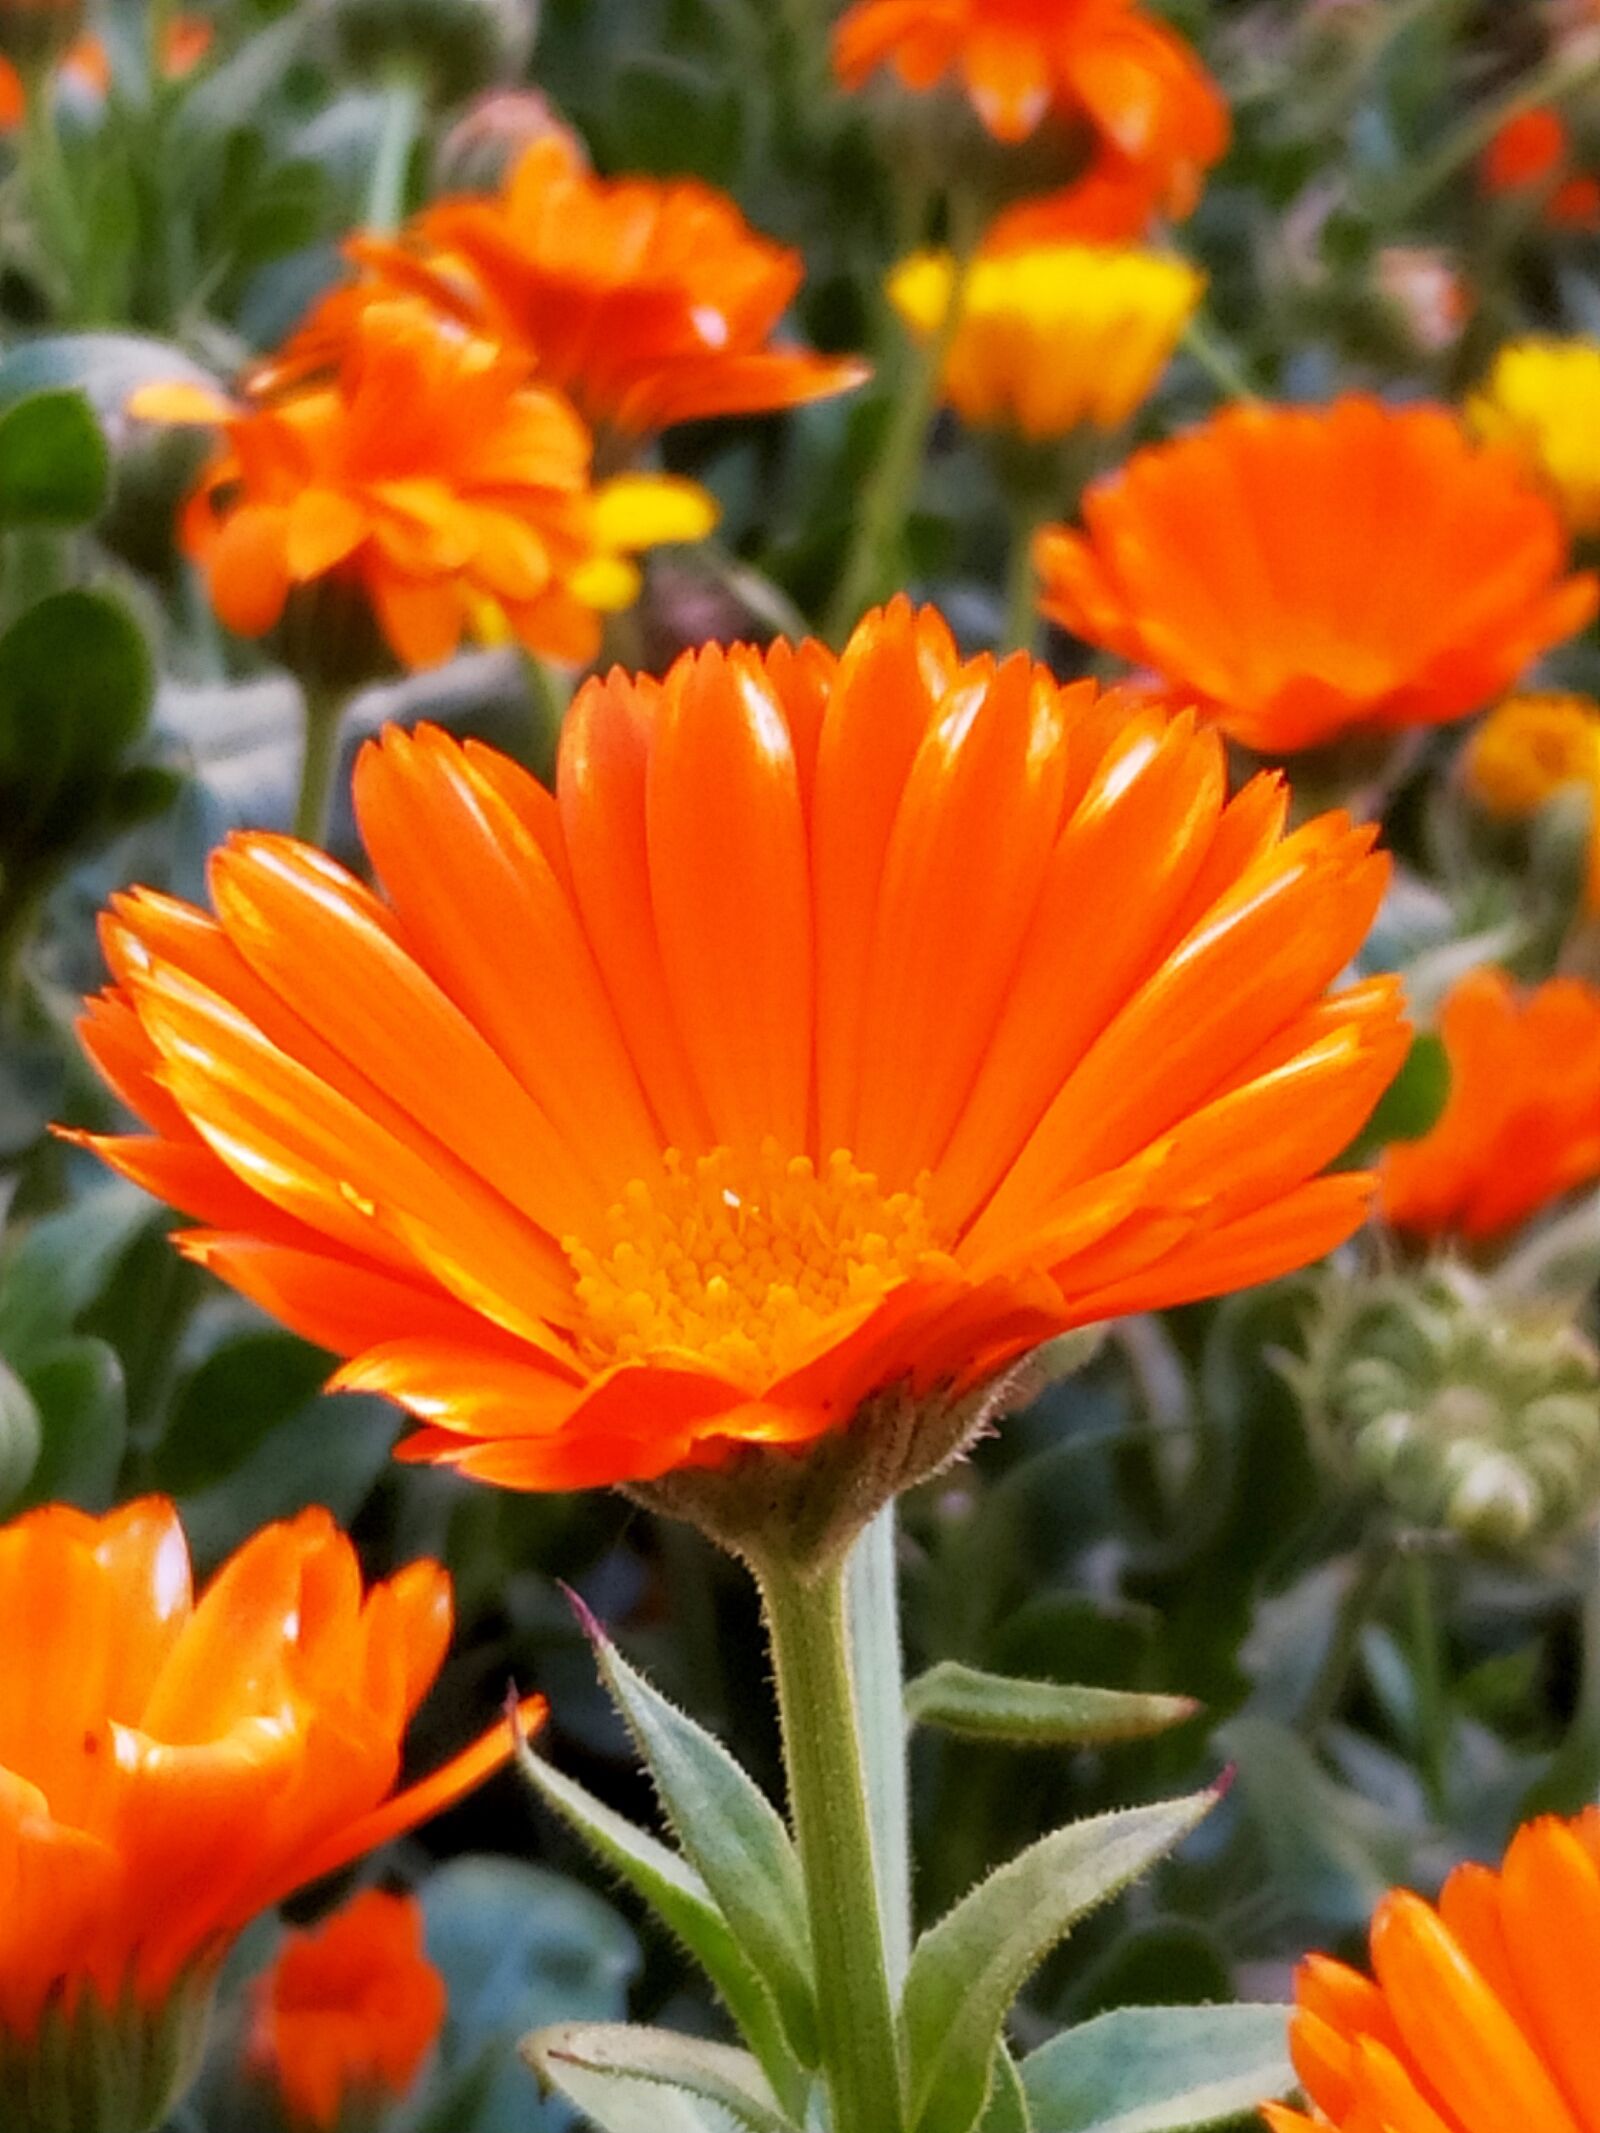 Xiaomi MI 8 Lite sample photo. Flower, orange, garden photography